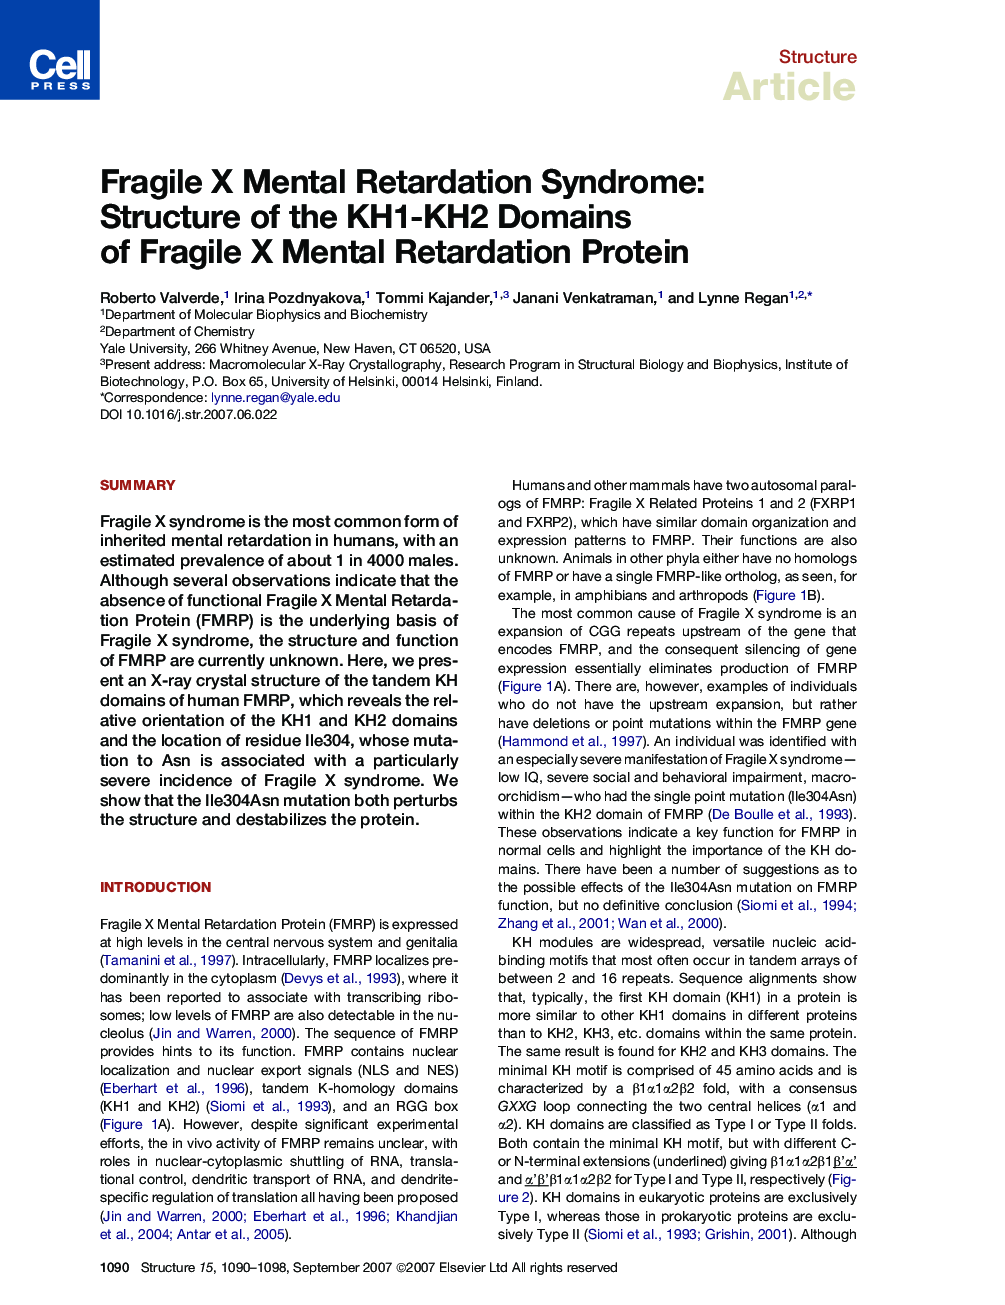 Fragile X Mental Retardation Syndrome: Structure of the KH1-KH2 Domains of Fragile X Mental Retardation Protein